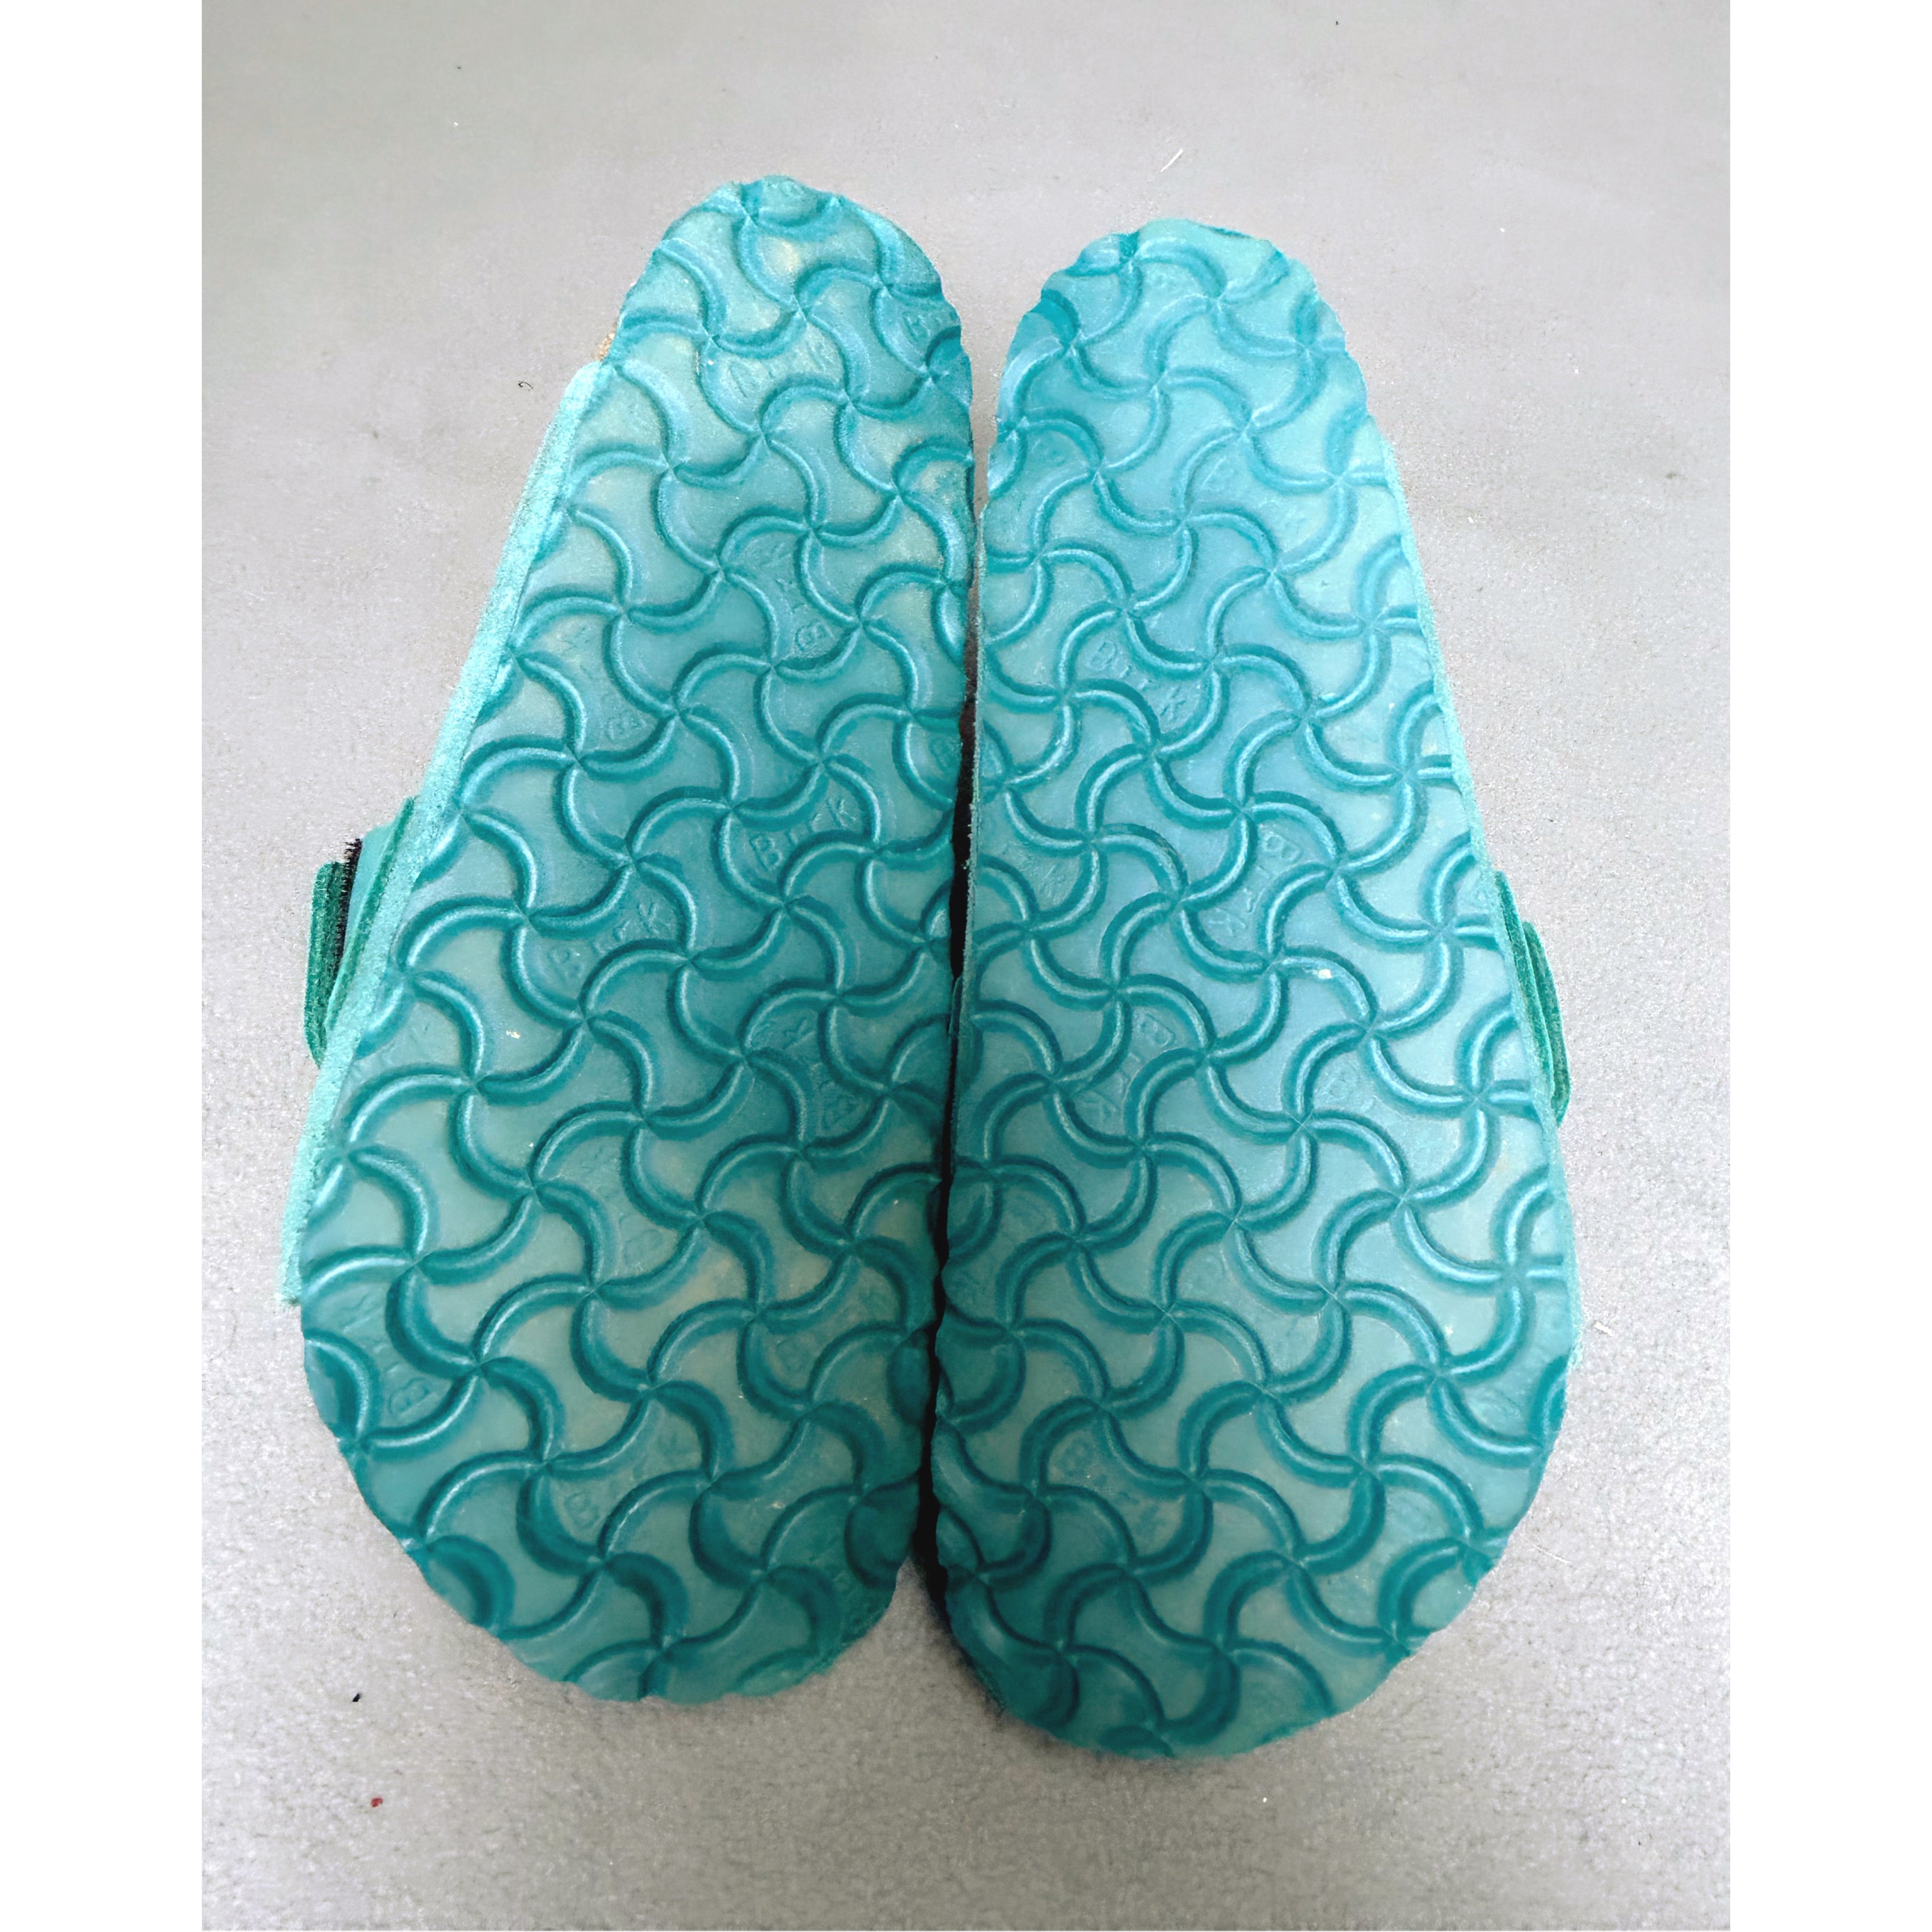 Birkenstock teal Kyoto sandals, size 7-7.5